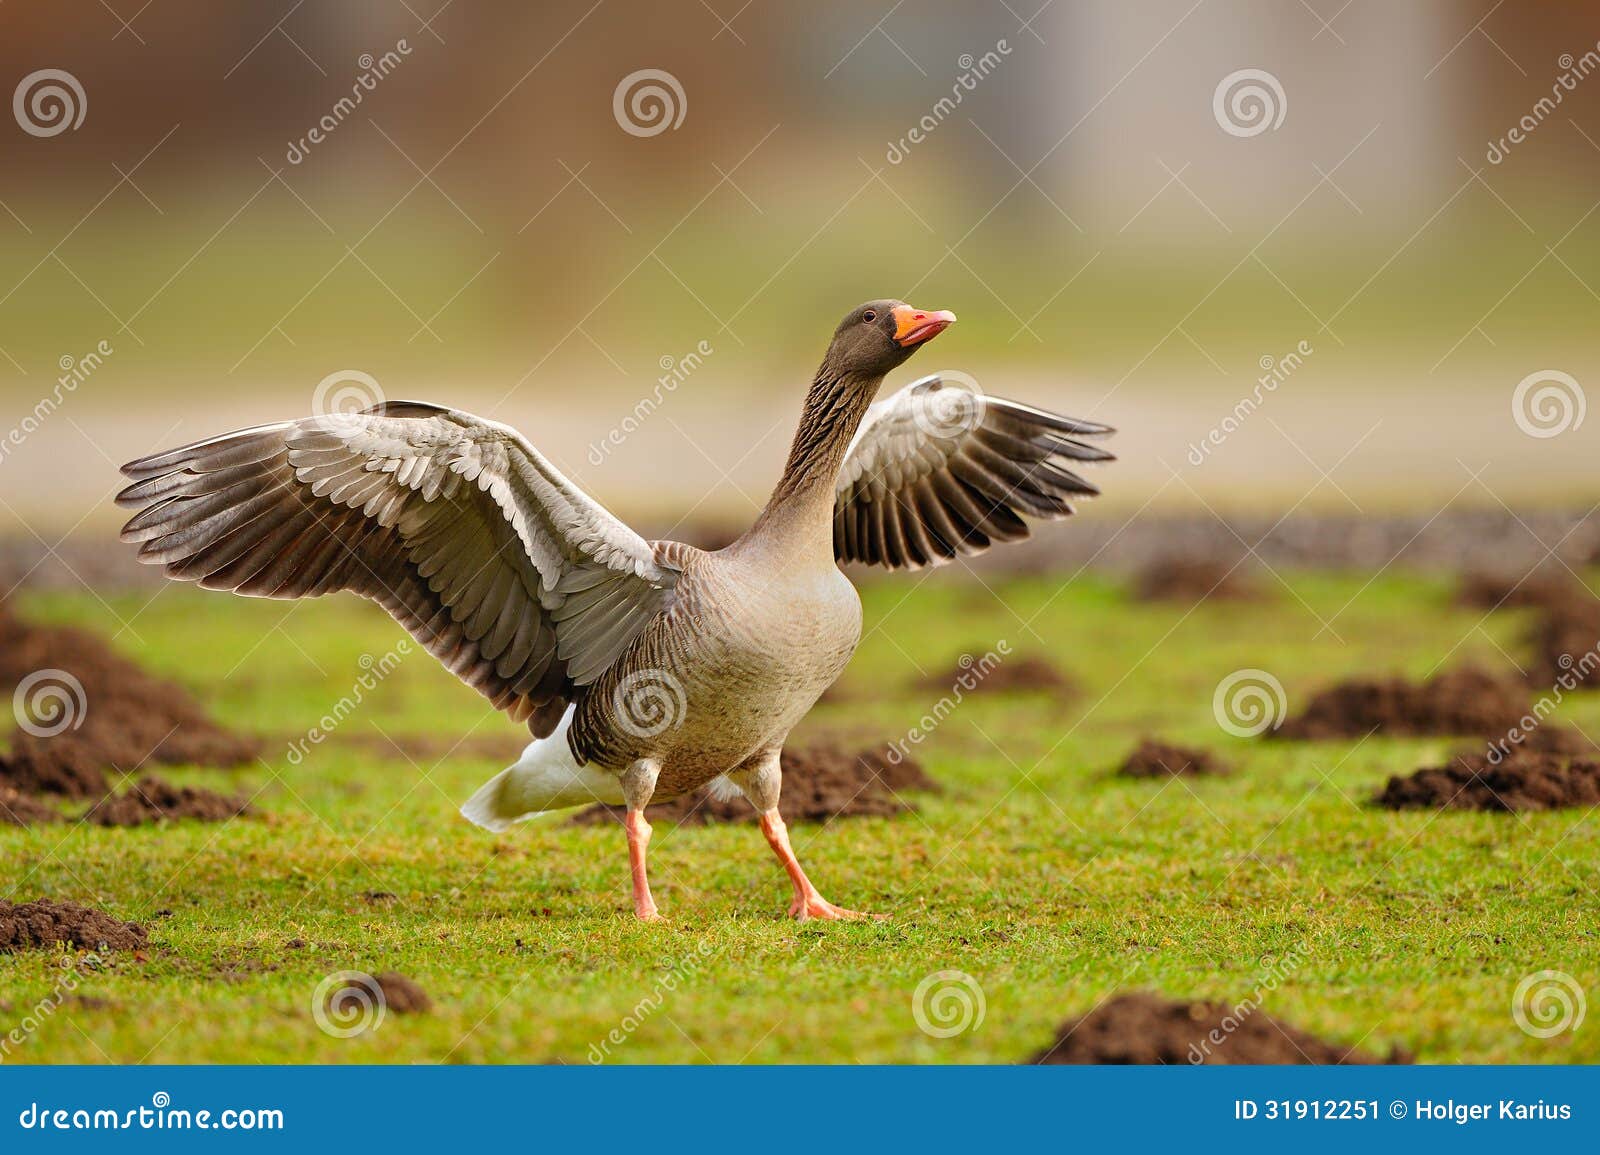 greylag goose (anser anser)